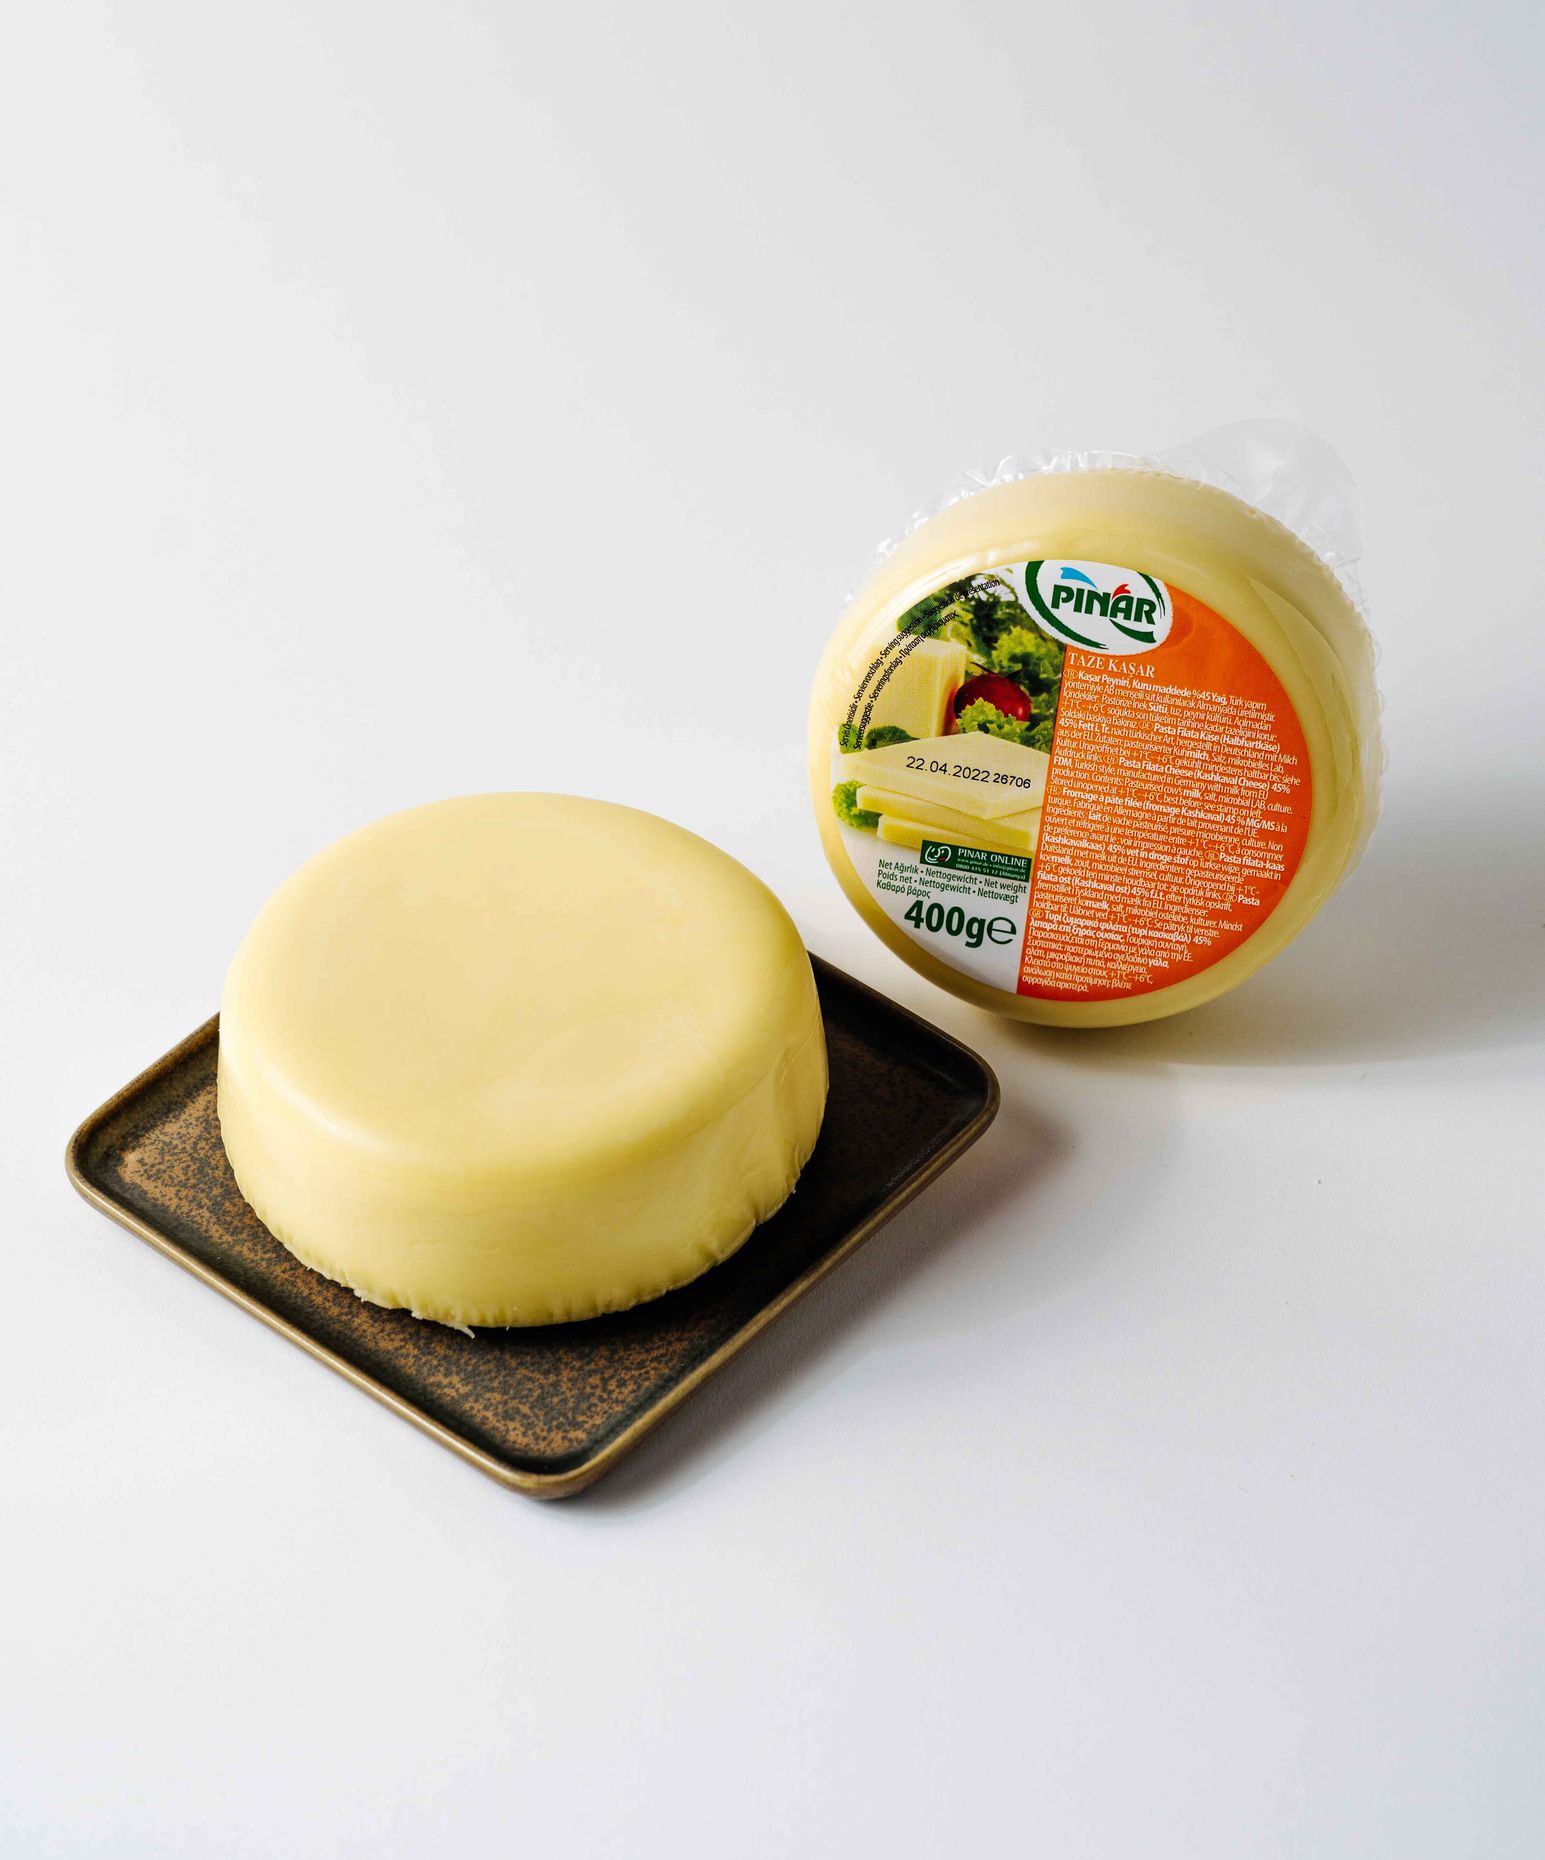 Pinar  Kaşar Peyniri